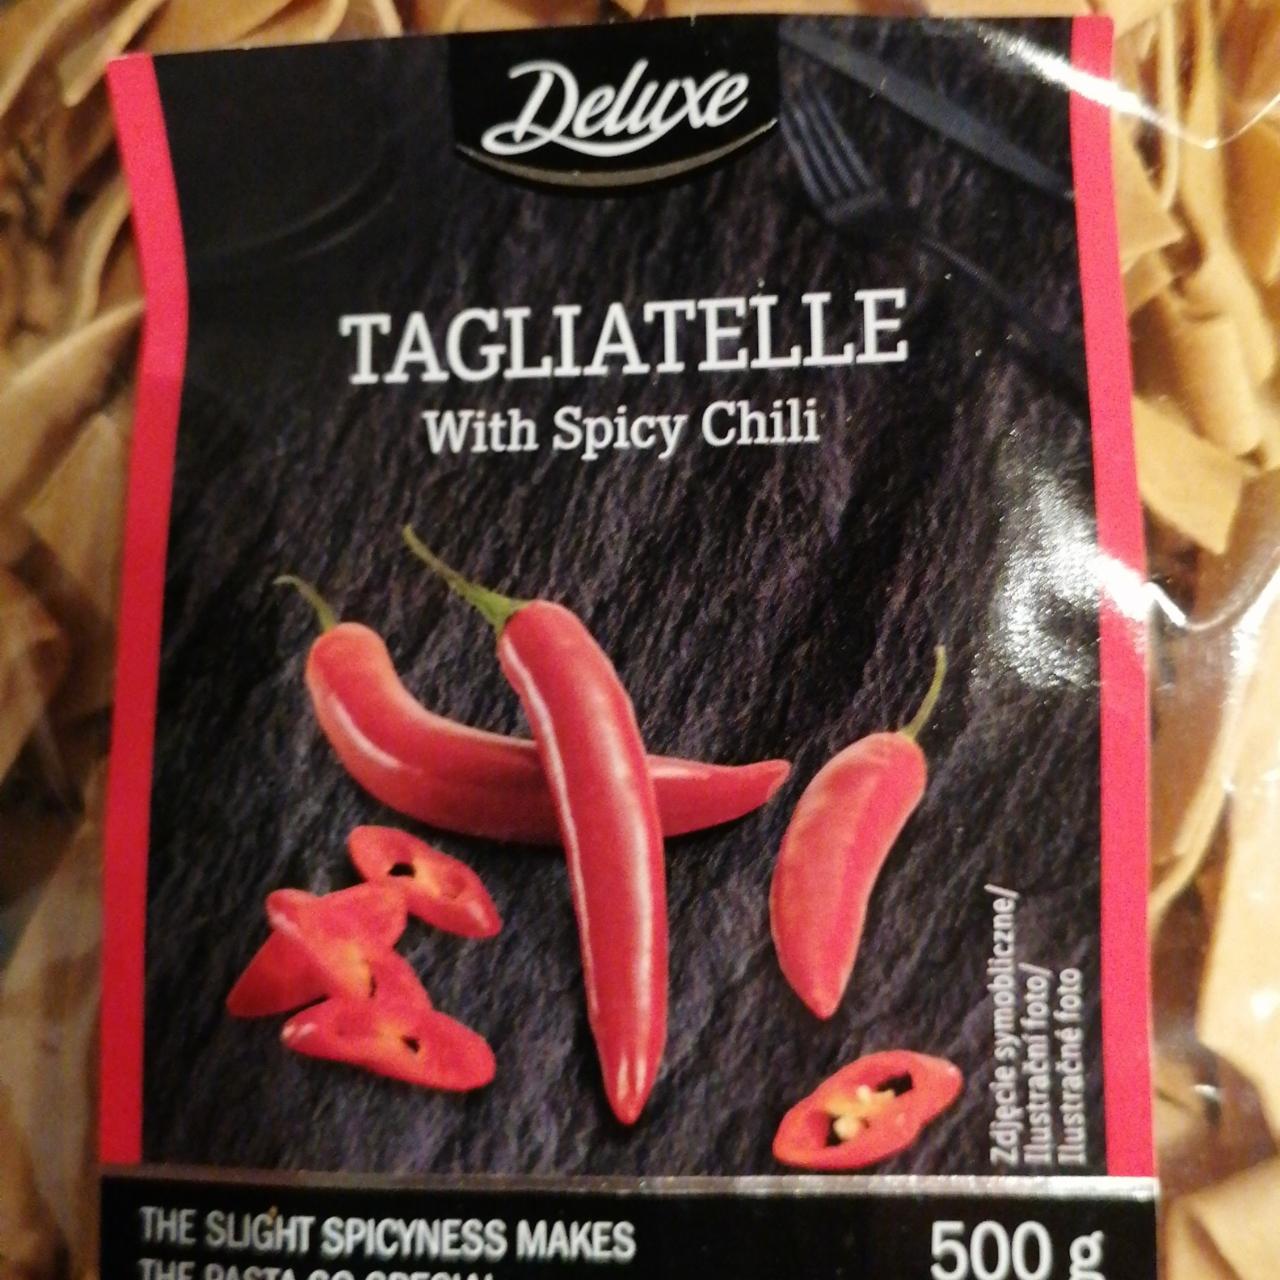 Zdjęcia - Tagliatelle with Spicy Chili Deluxe